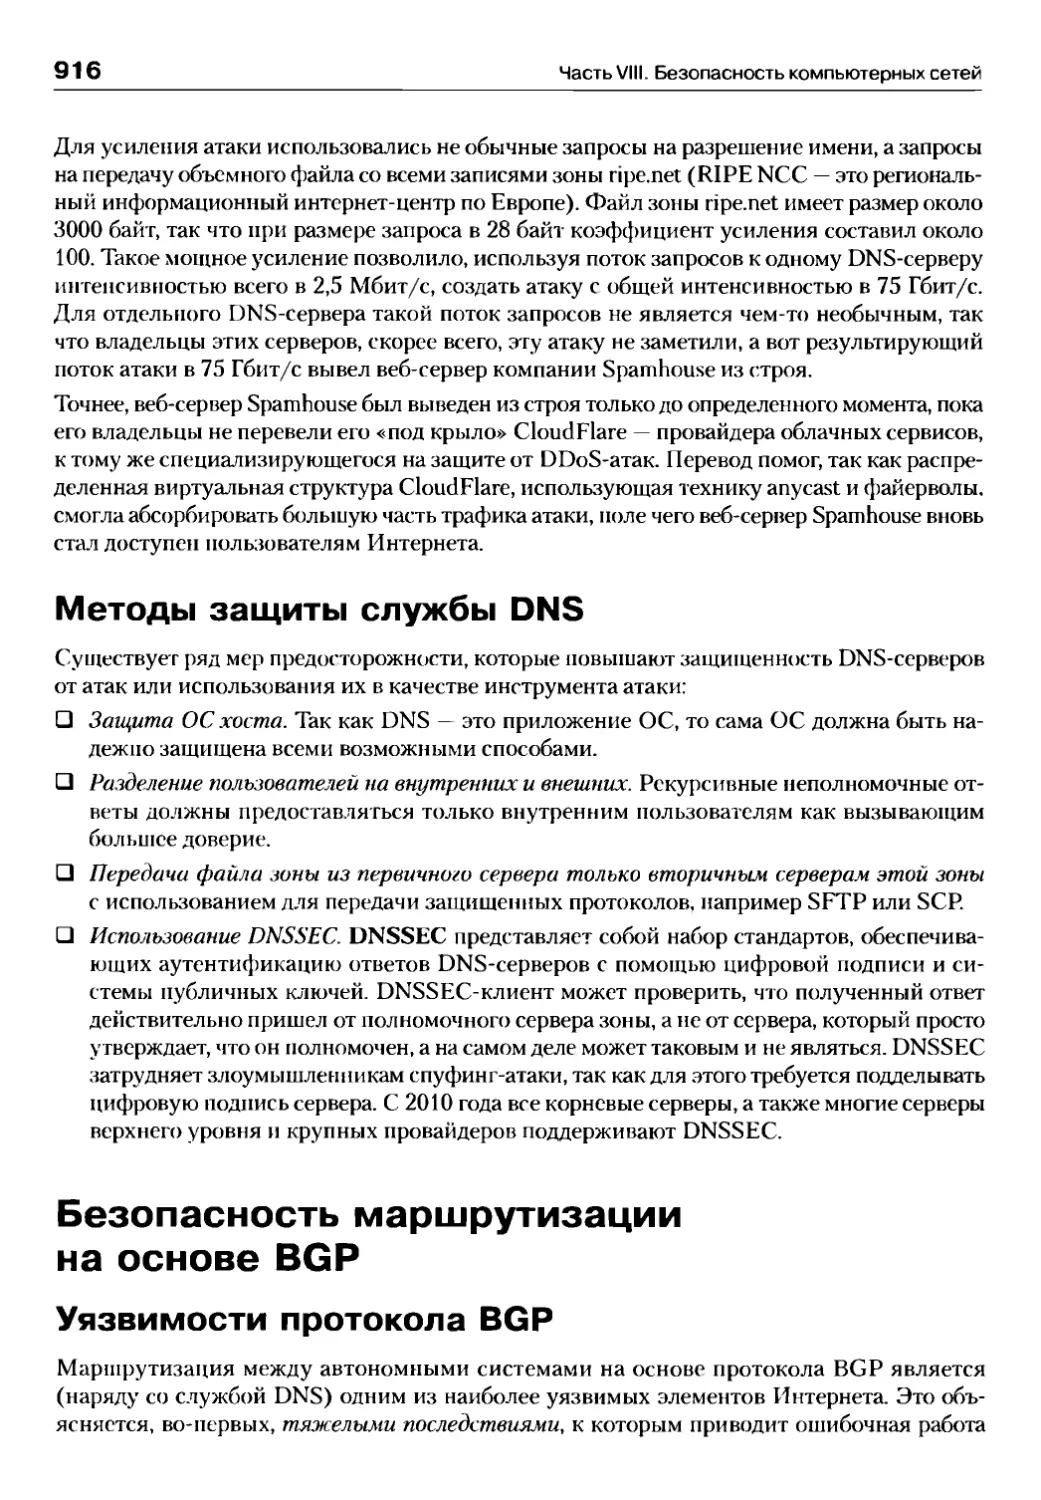 Методы защиты службы DNS
Безопасность маршрутизации на основе BGP